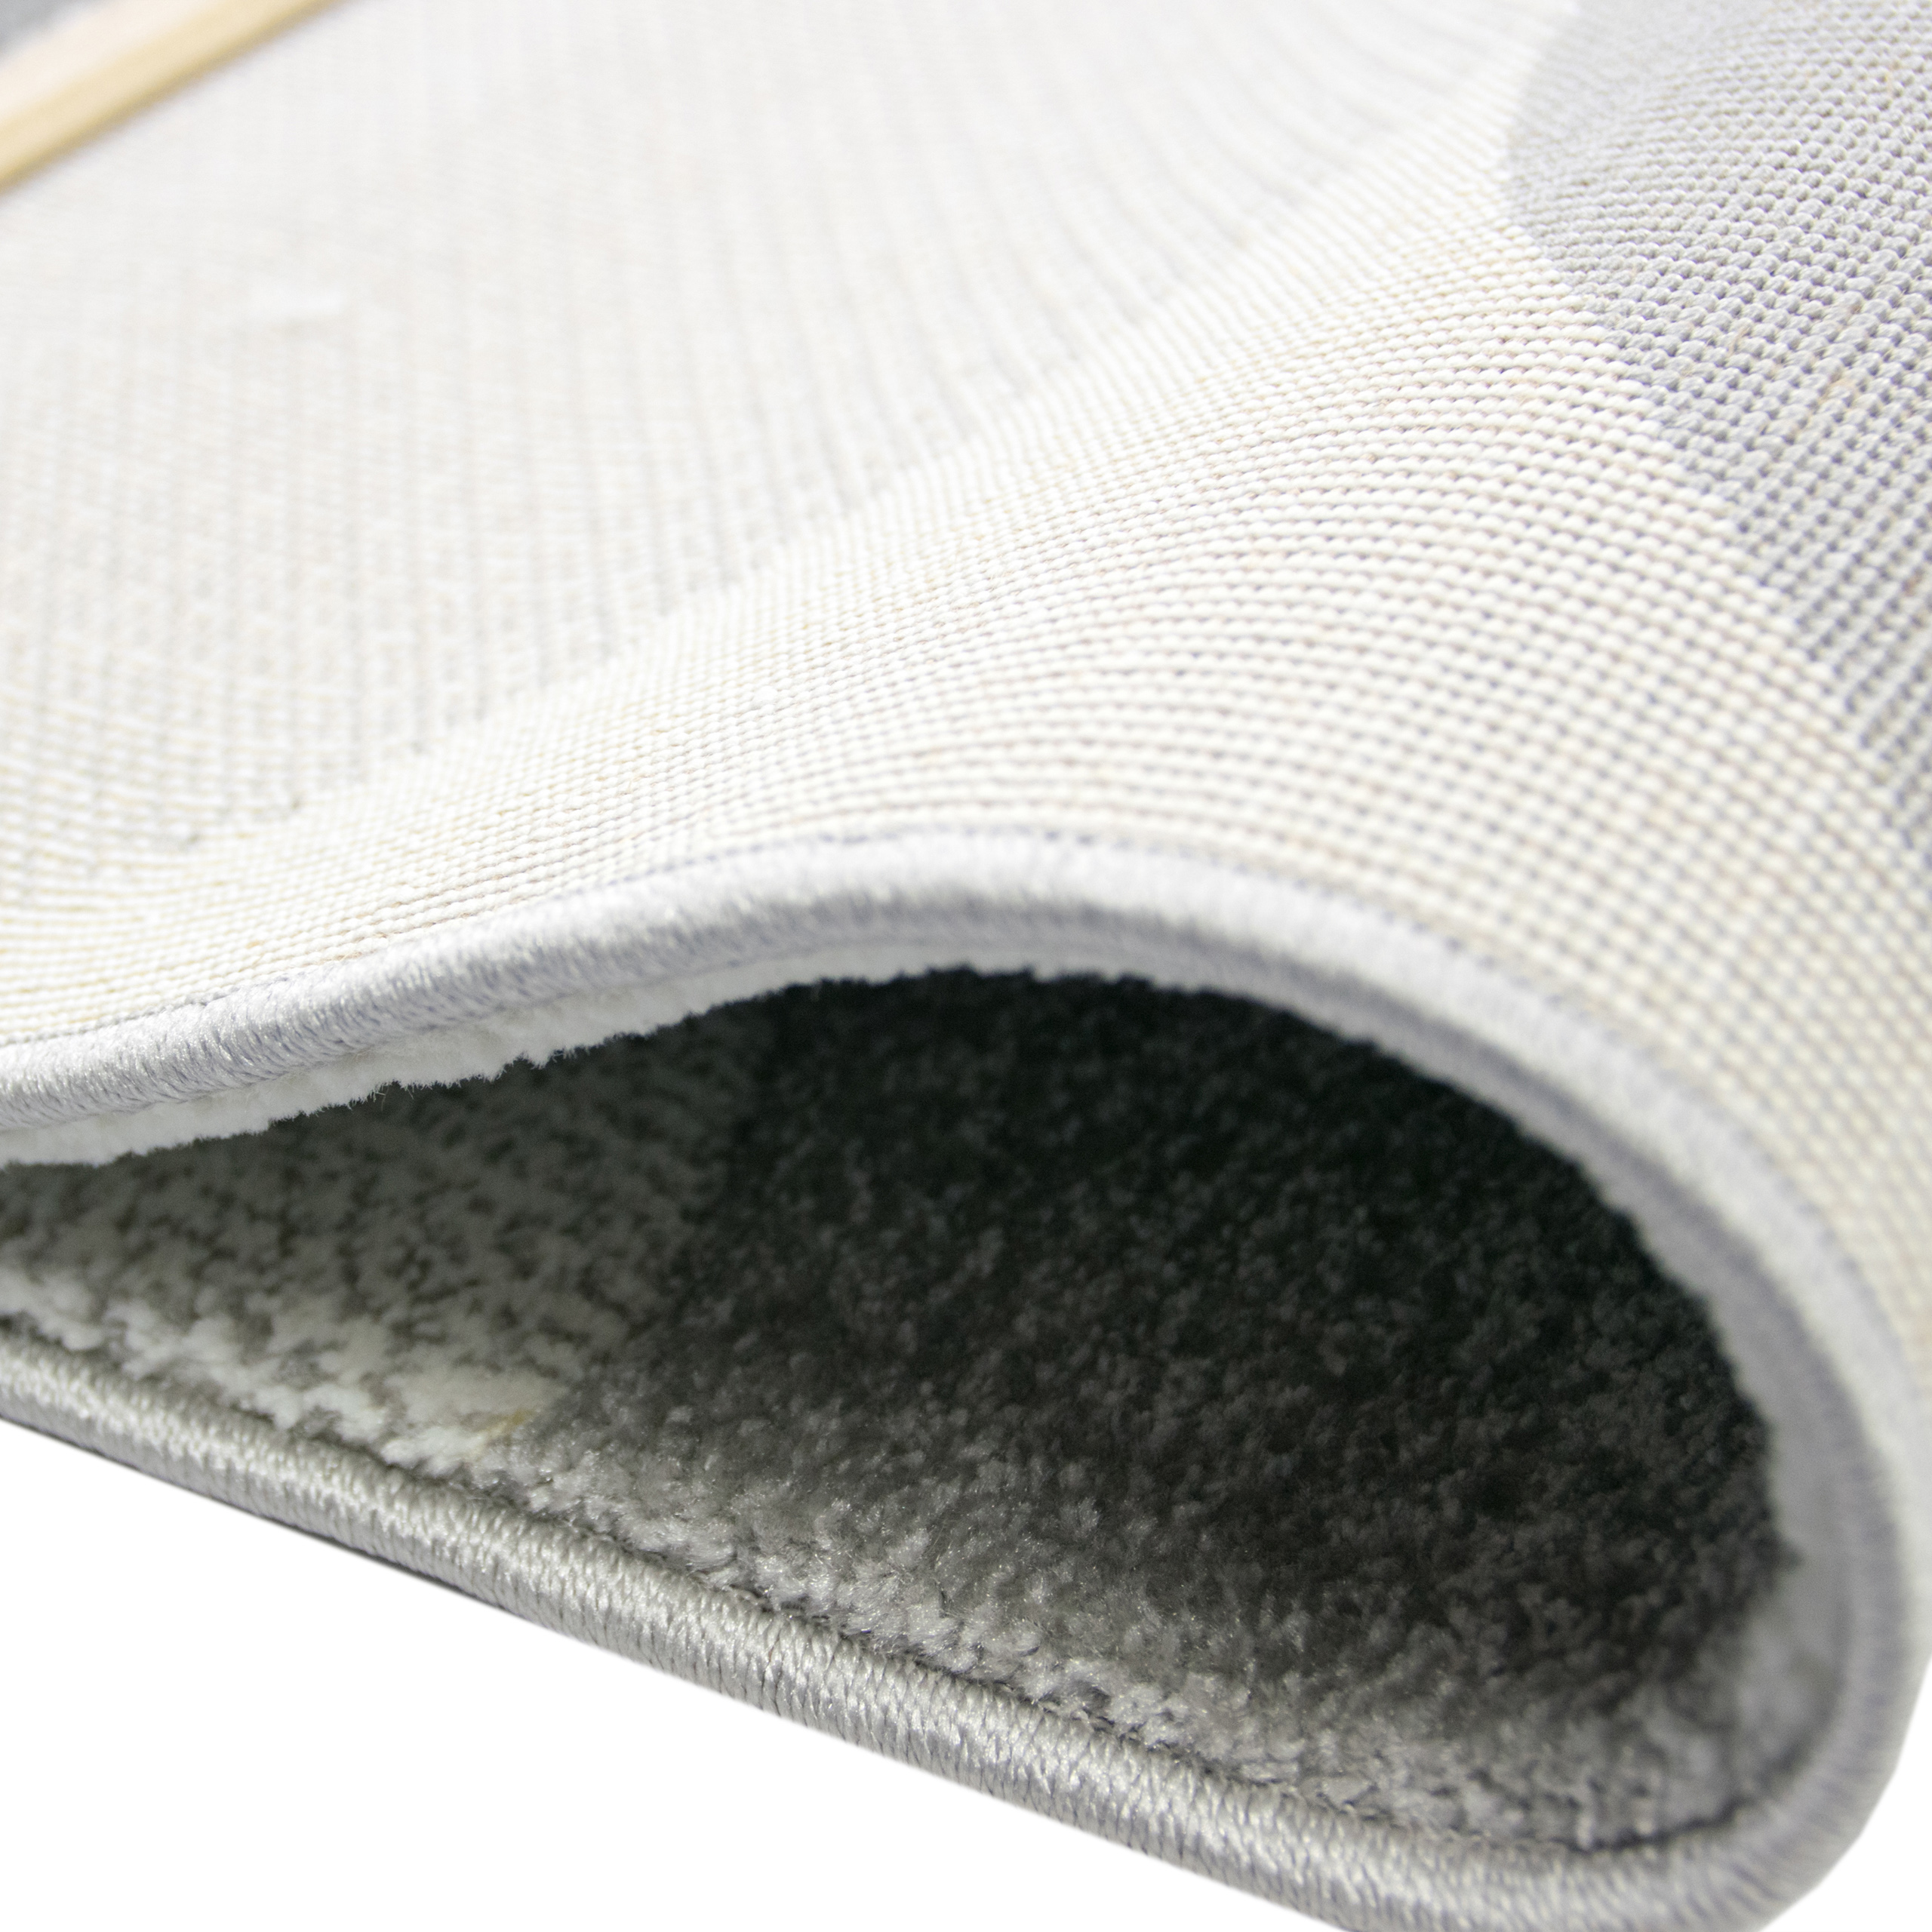 Moderne & Designer-Teppiche: Hochwertig und günstig bei Teppich-Traum